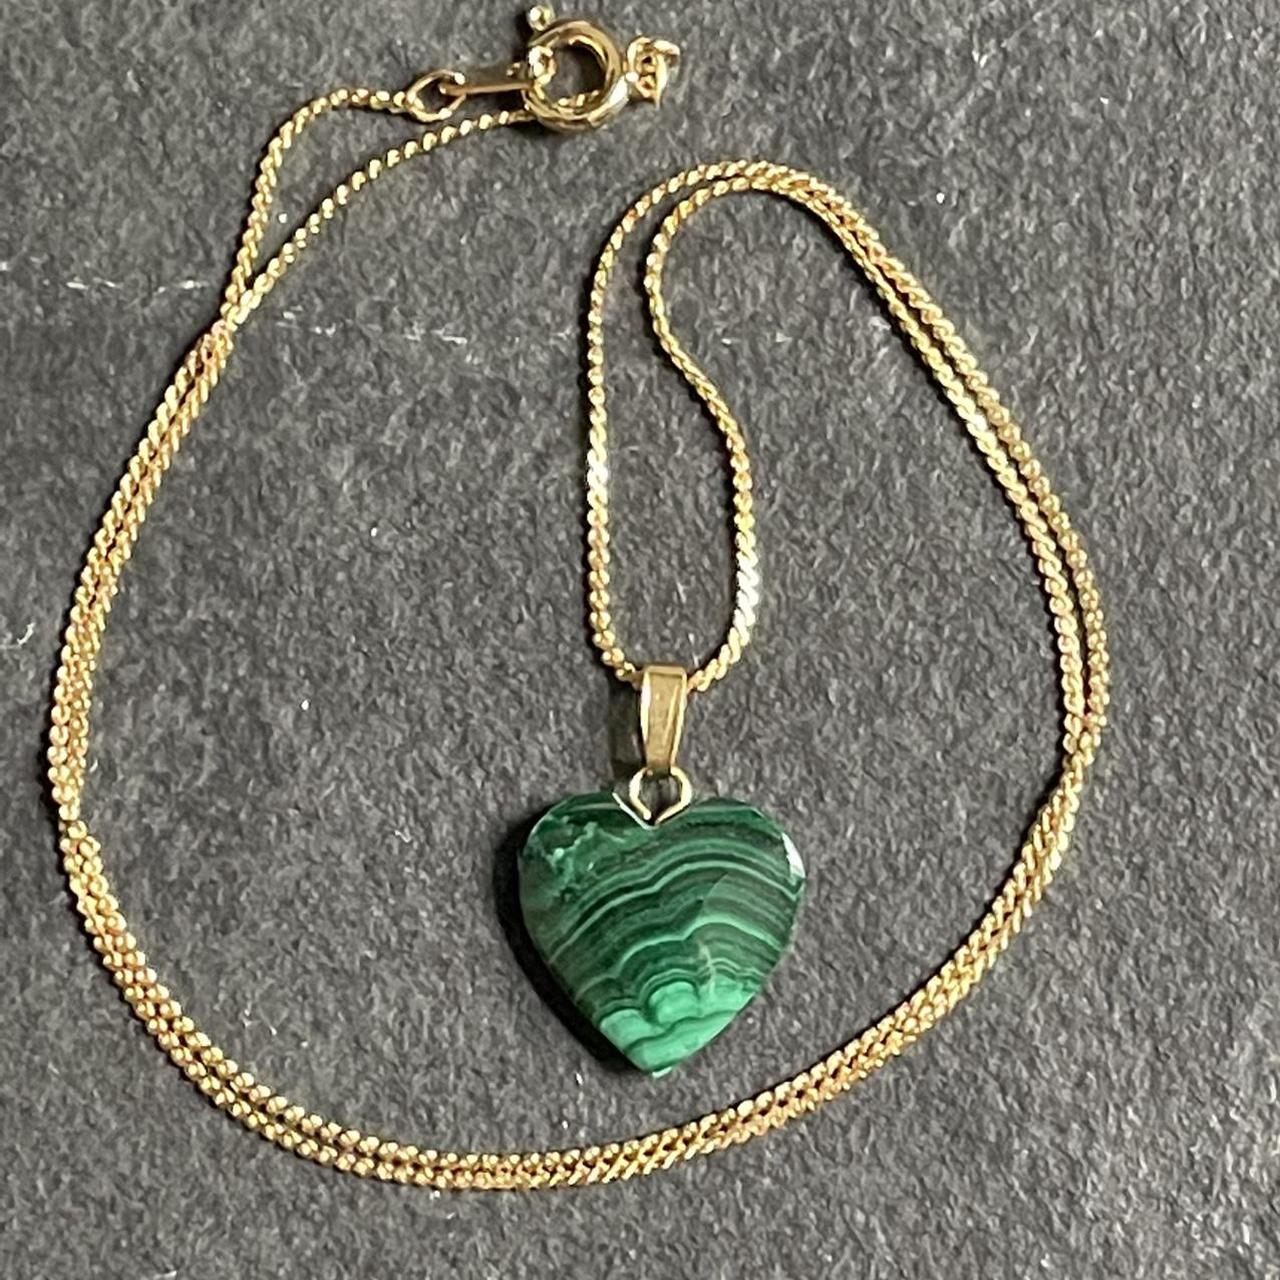 Product Image 1 - Malachite heart gemstone necklace. Brand